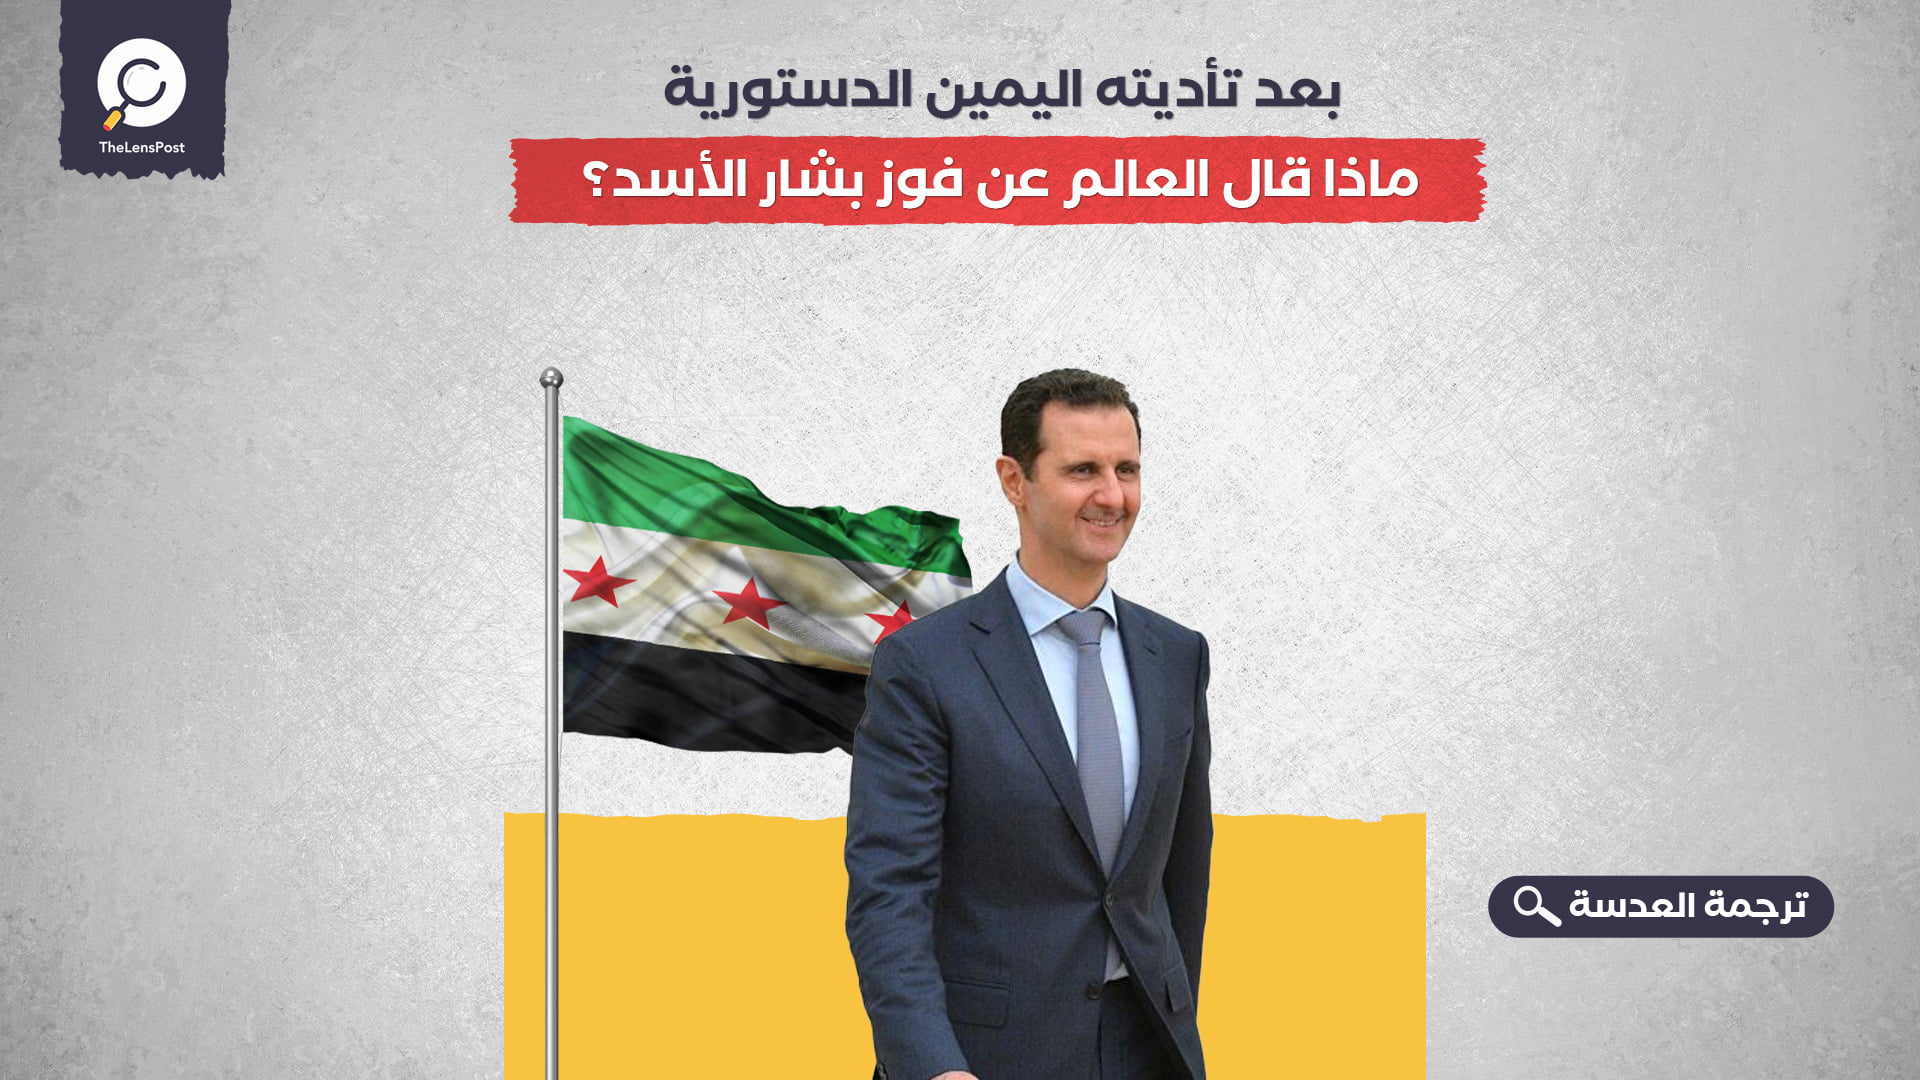  بعد تأديته اليمين الدستورية... ماذا قال العالم عن فوز بشار الأسد؟